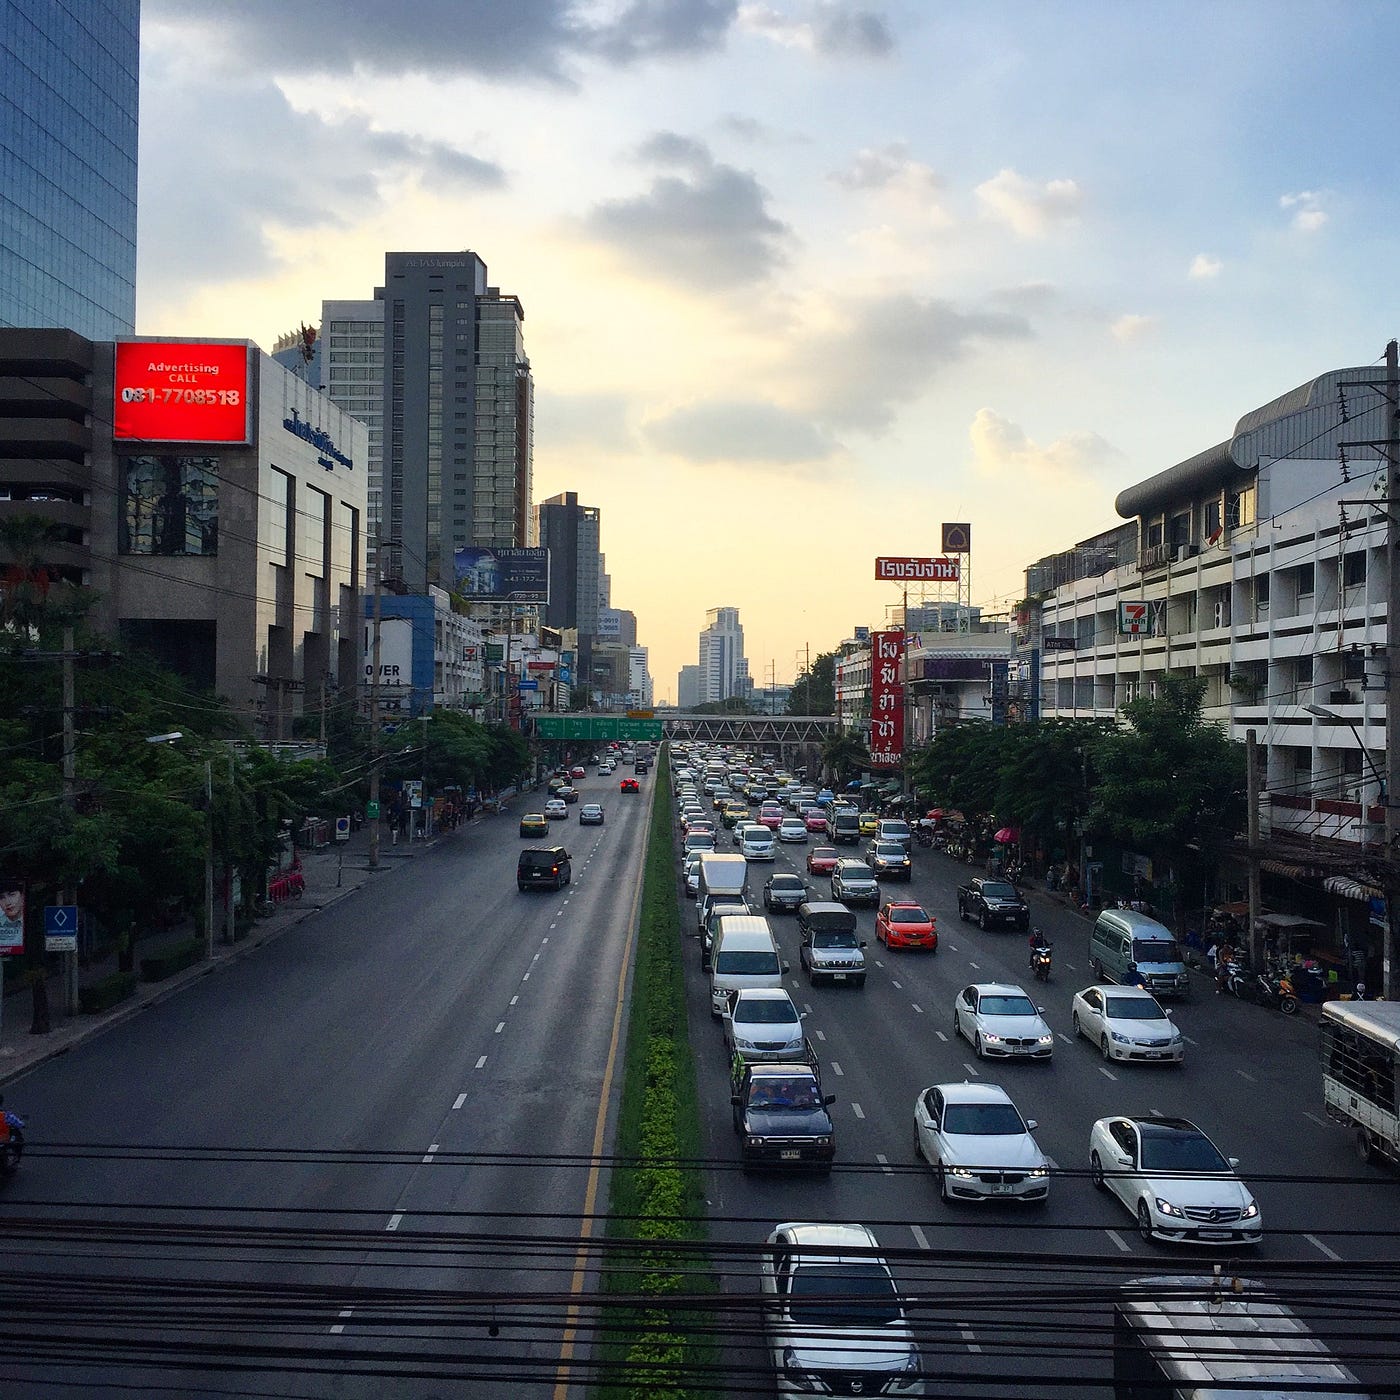 BANGKOK, THAILAND - NOVEMBER 5, 2016: The Emporium Shopping Mall